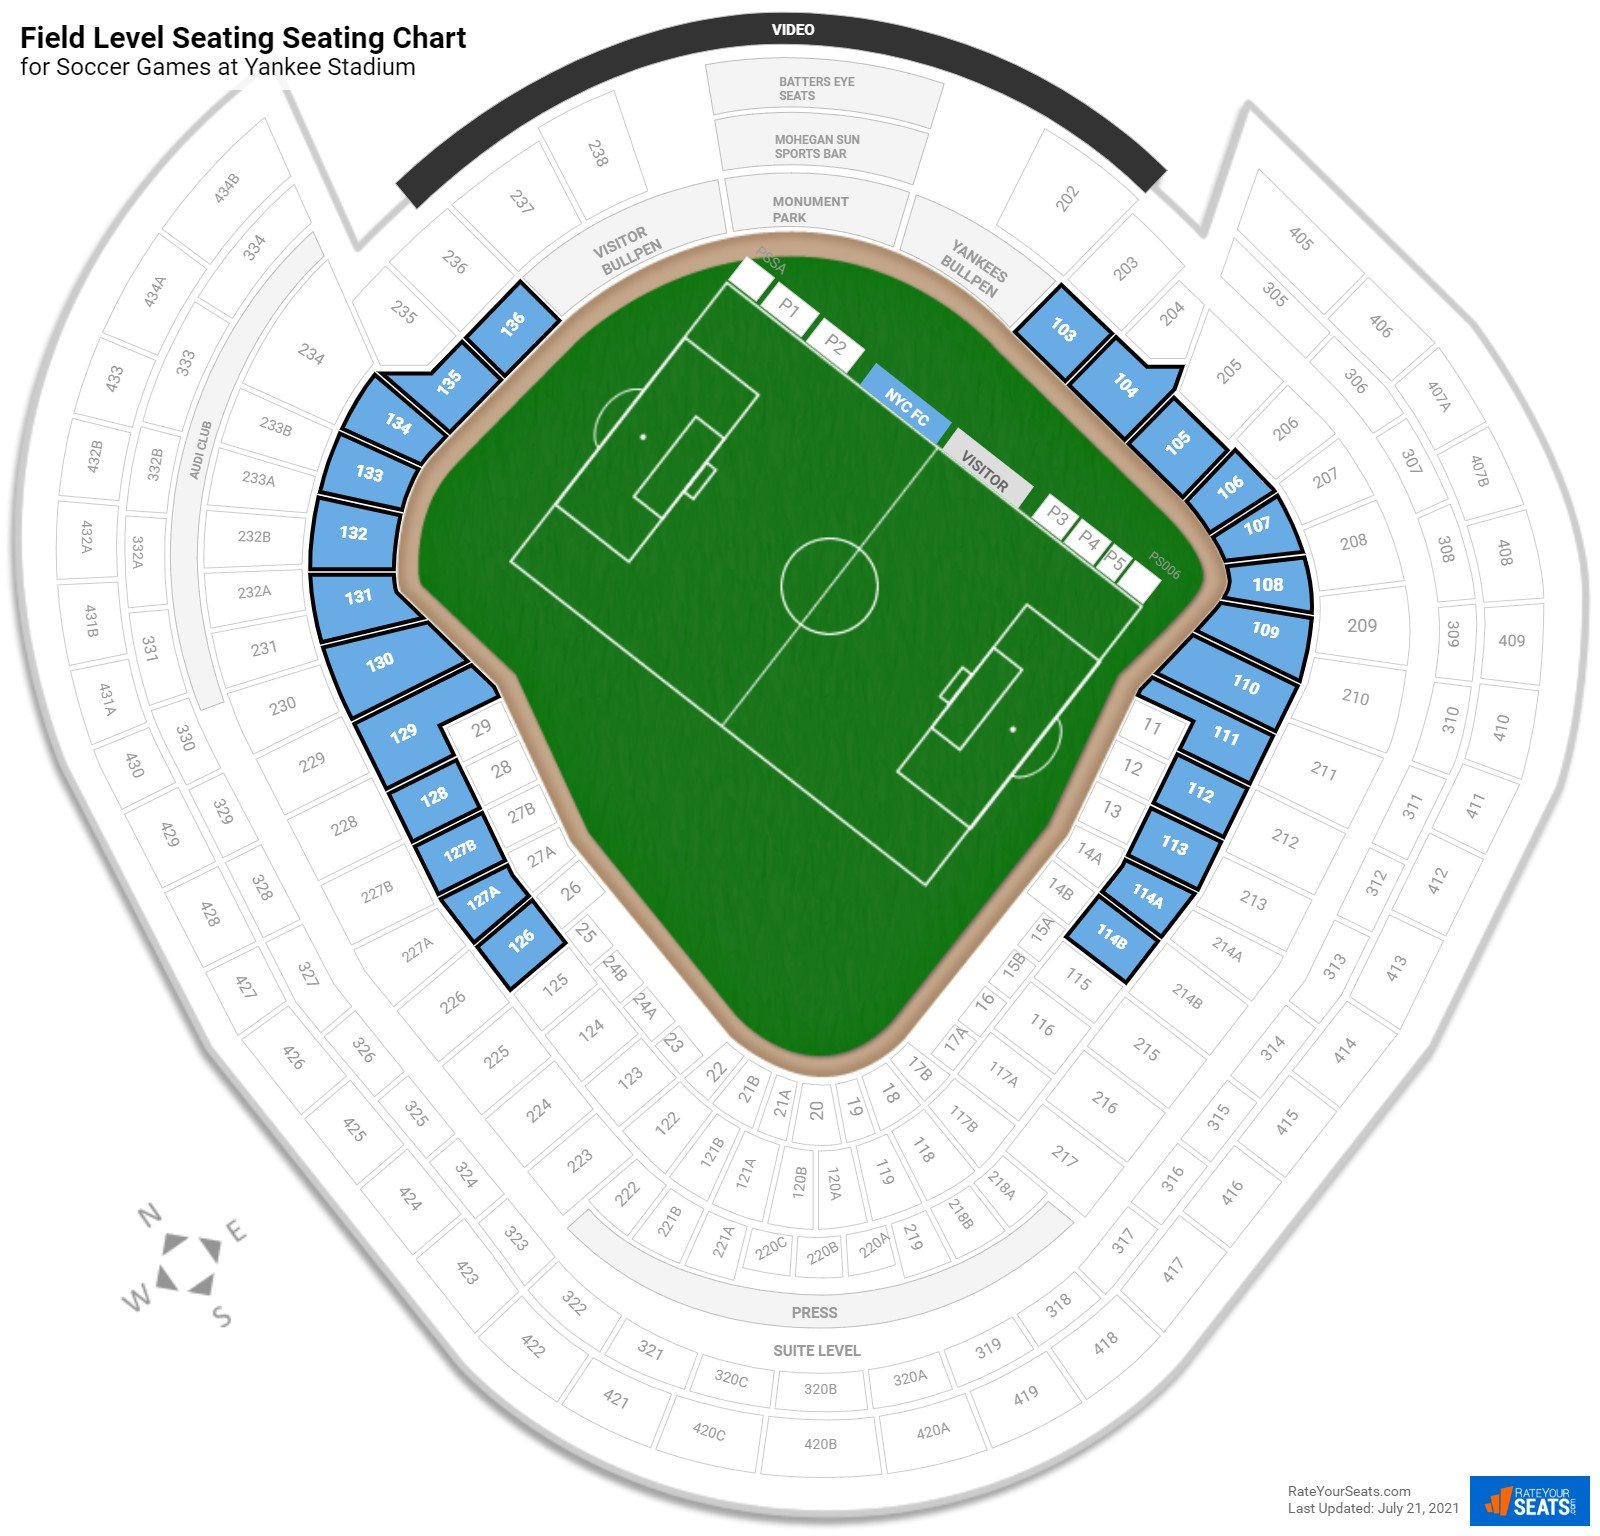 Yankee Stadium Field Level Seating